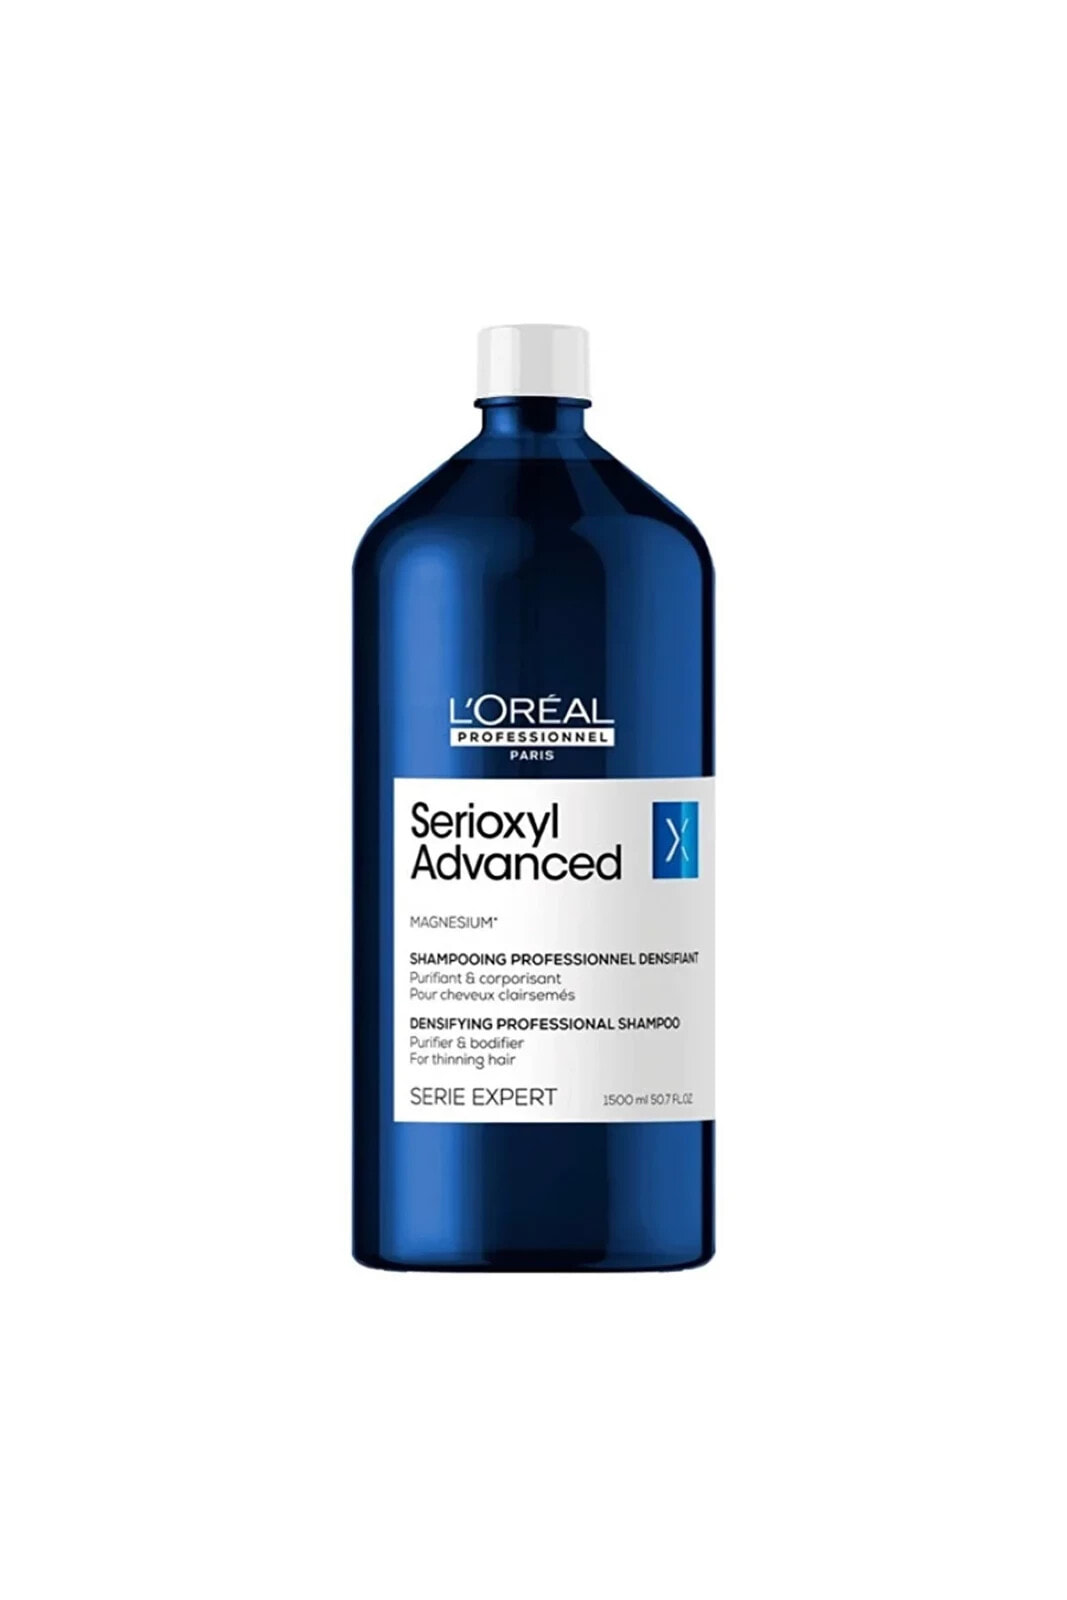 Serie Expert Serioxyl Advanced Incelmiş Saç Telleri Için Yoğunlaştırıcı&Parlatıcı Şampuan 1500 Ml663